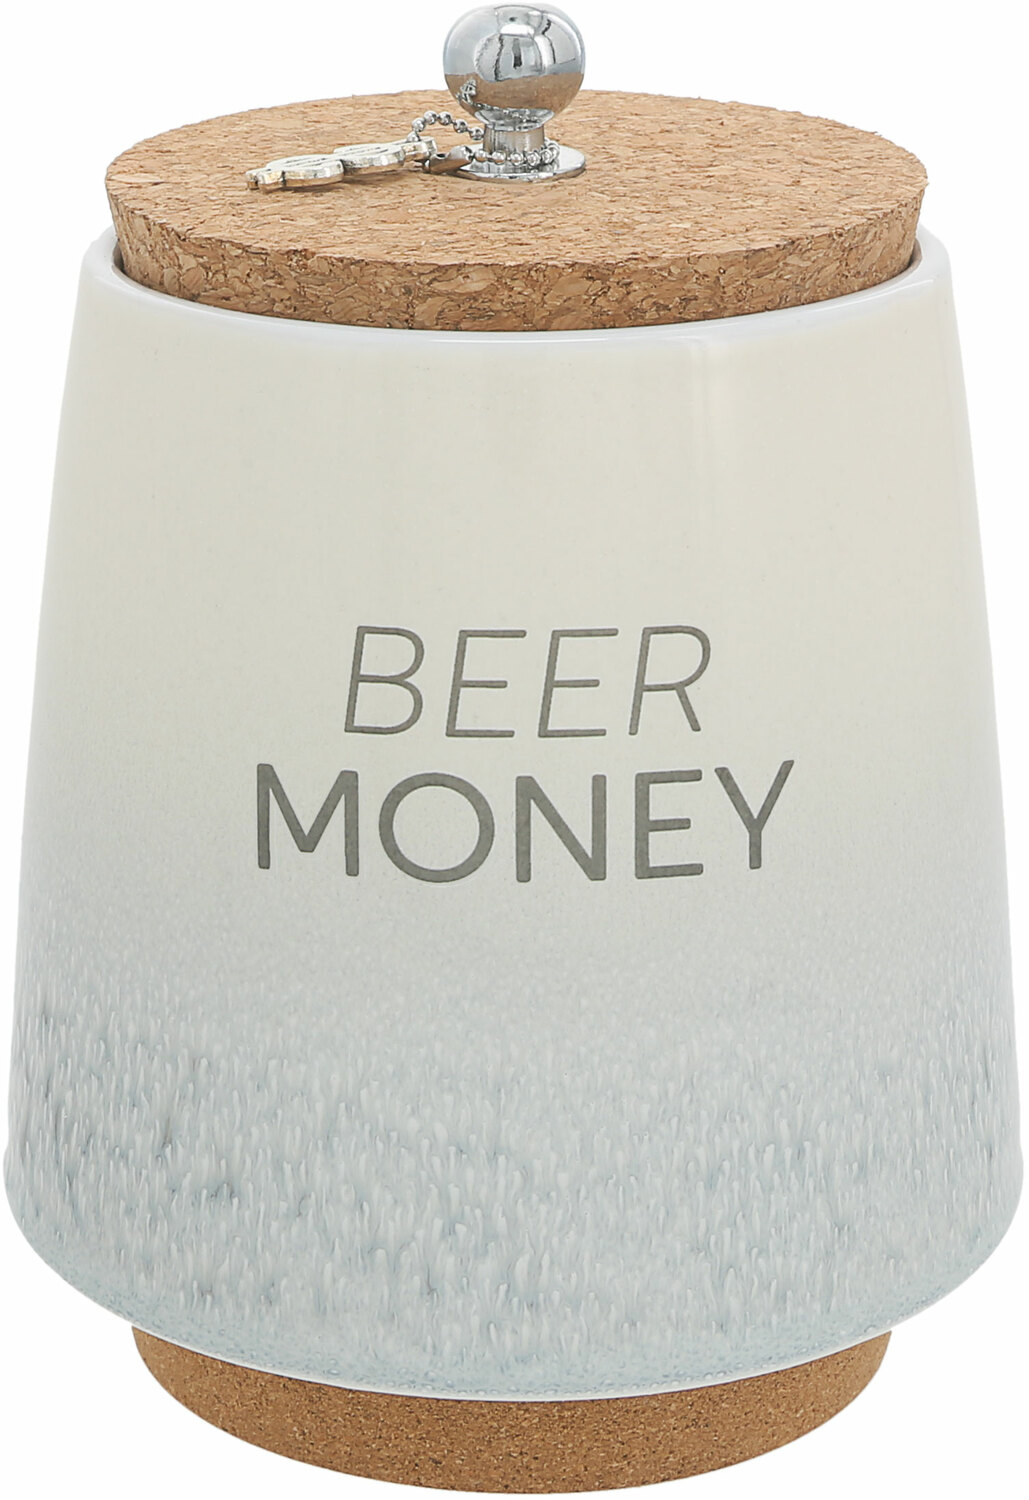 Beer by So Much Fun-d - Beer - 6.5" Ceramic Savings Bank